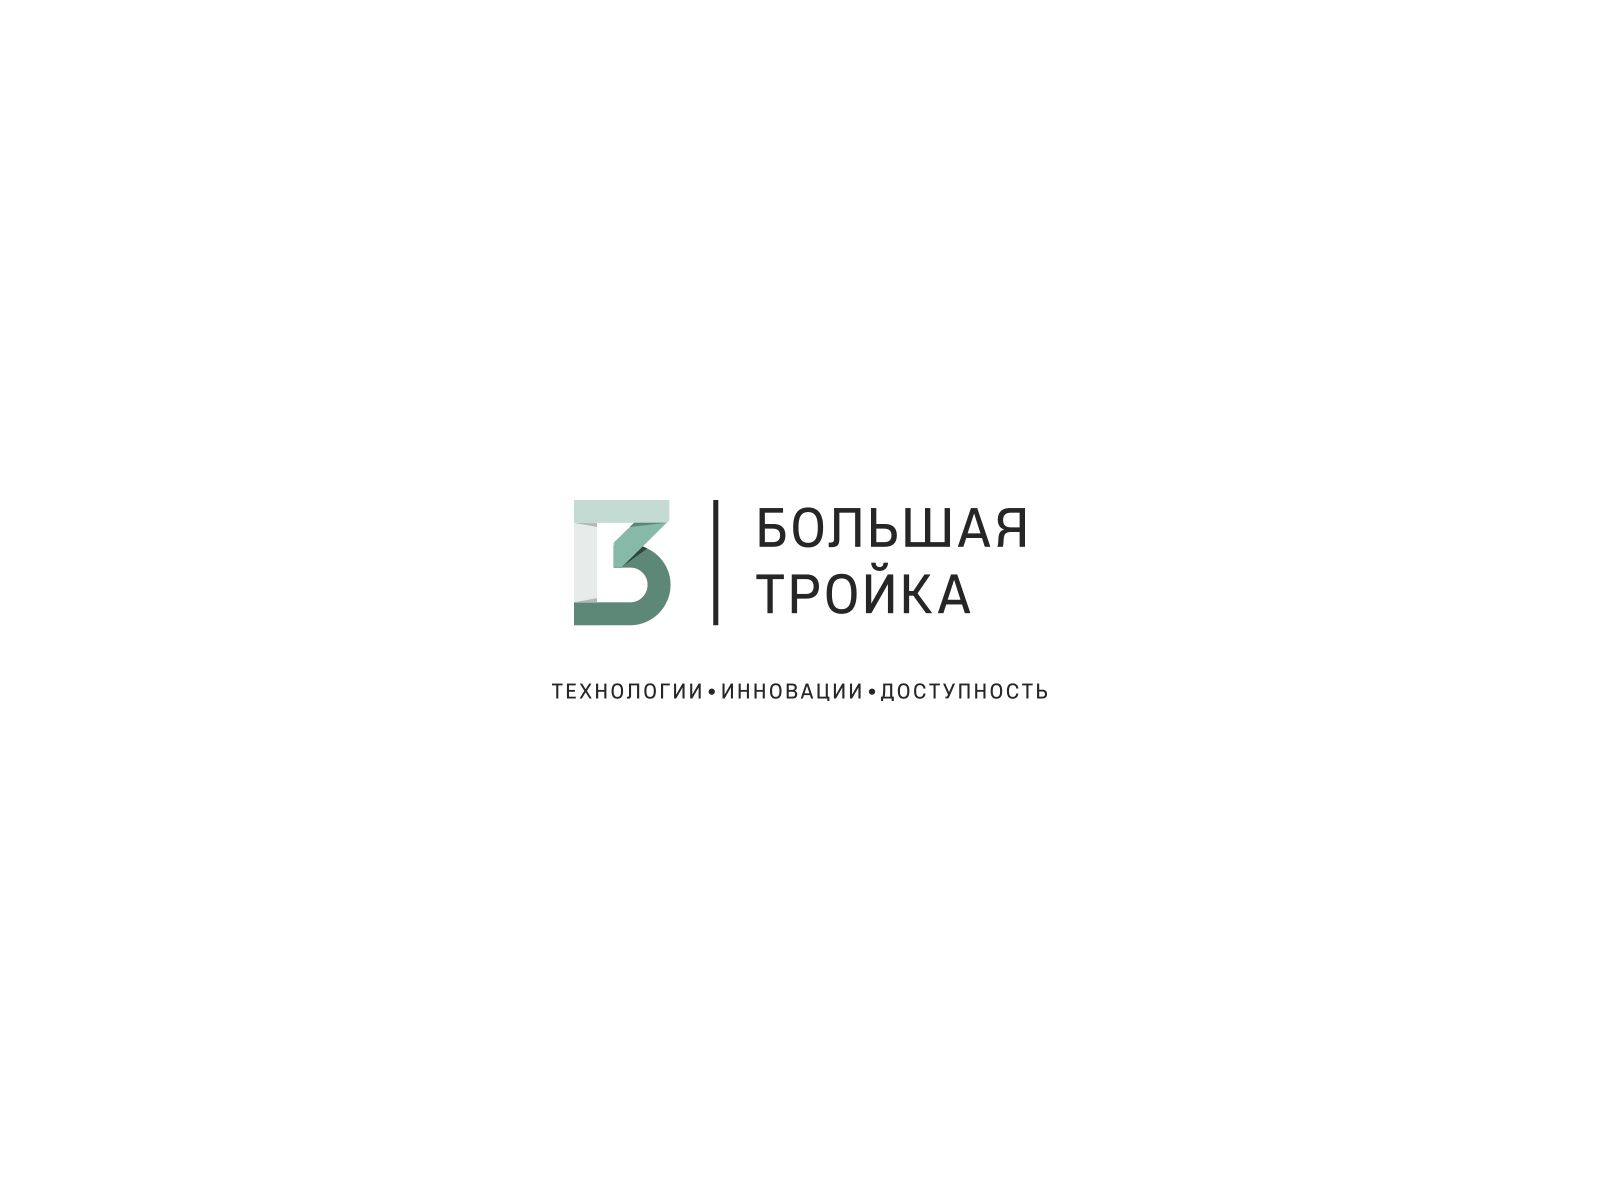 Логотип инновационной компании Большая Тройка - дизайнер U4po4mak